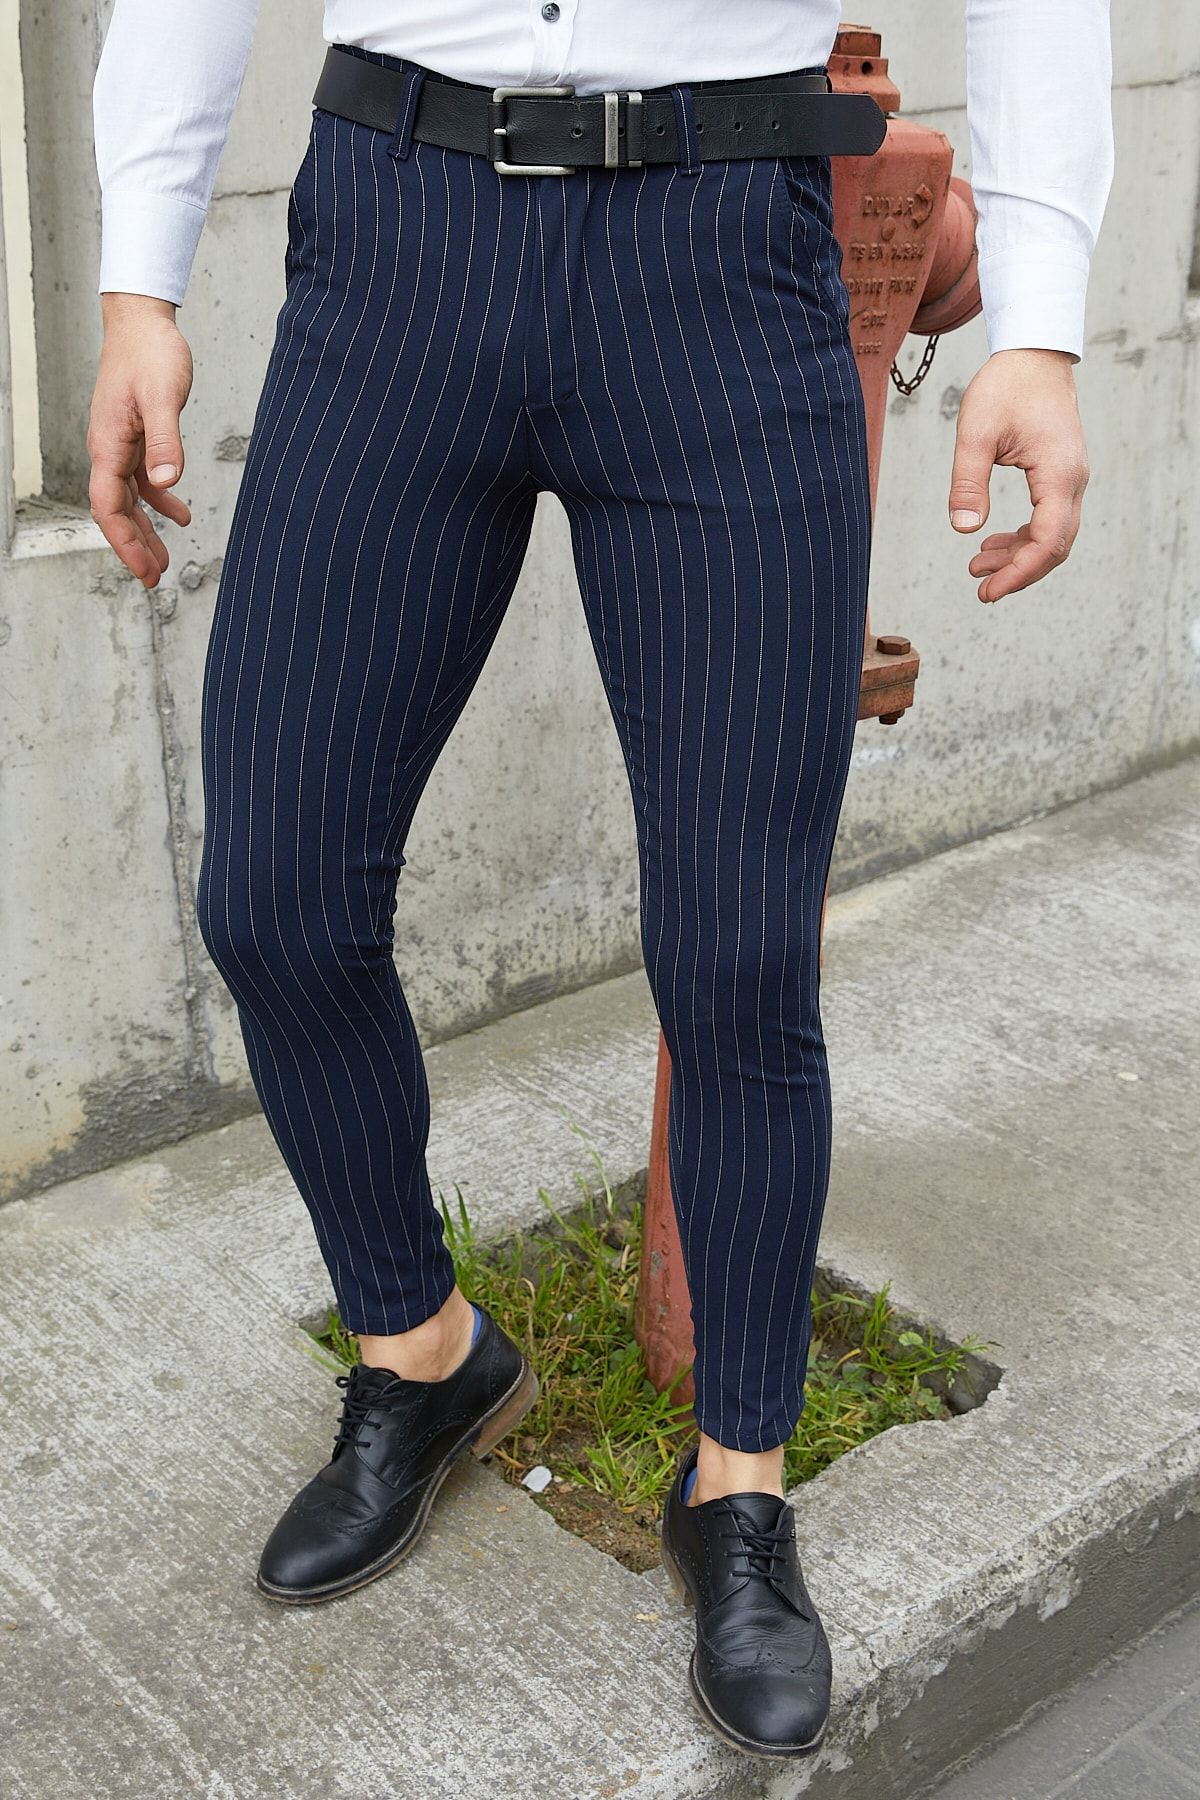 Men Striped Trousers - Buy Men Striped Trousers online in India